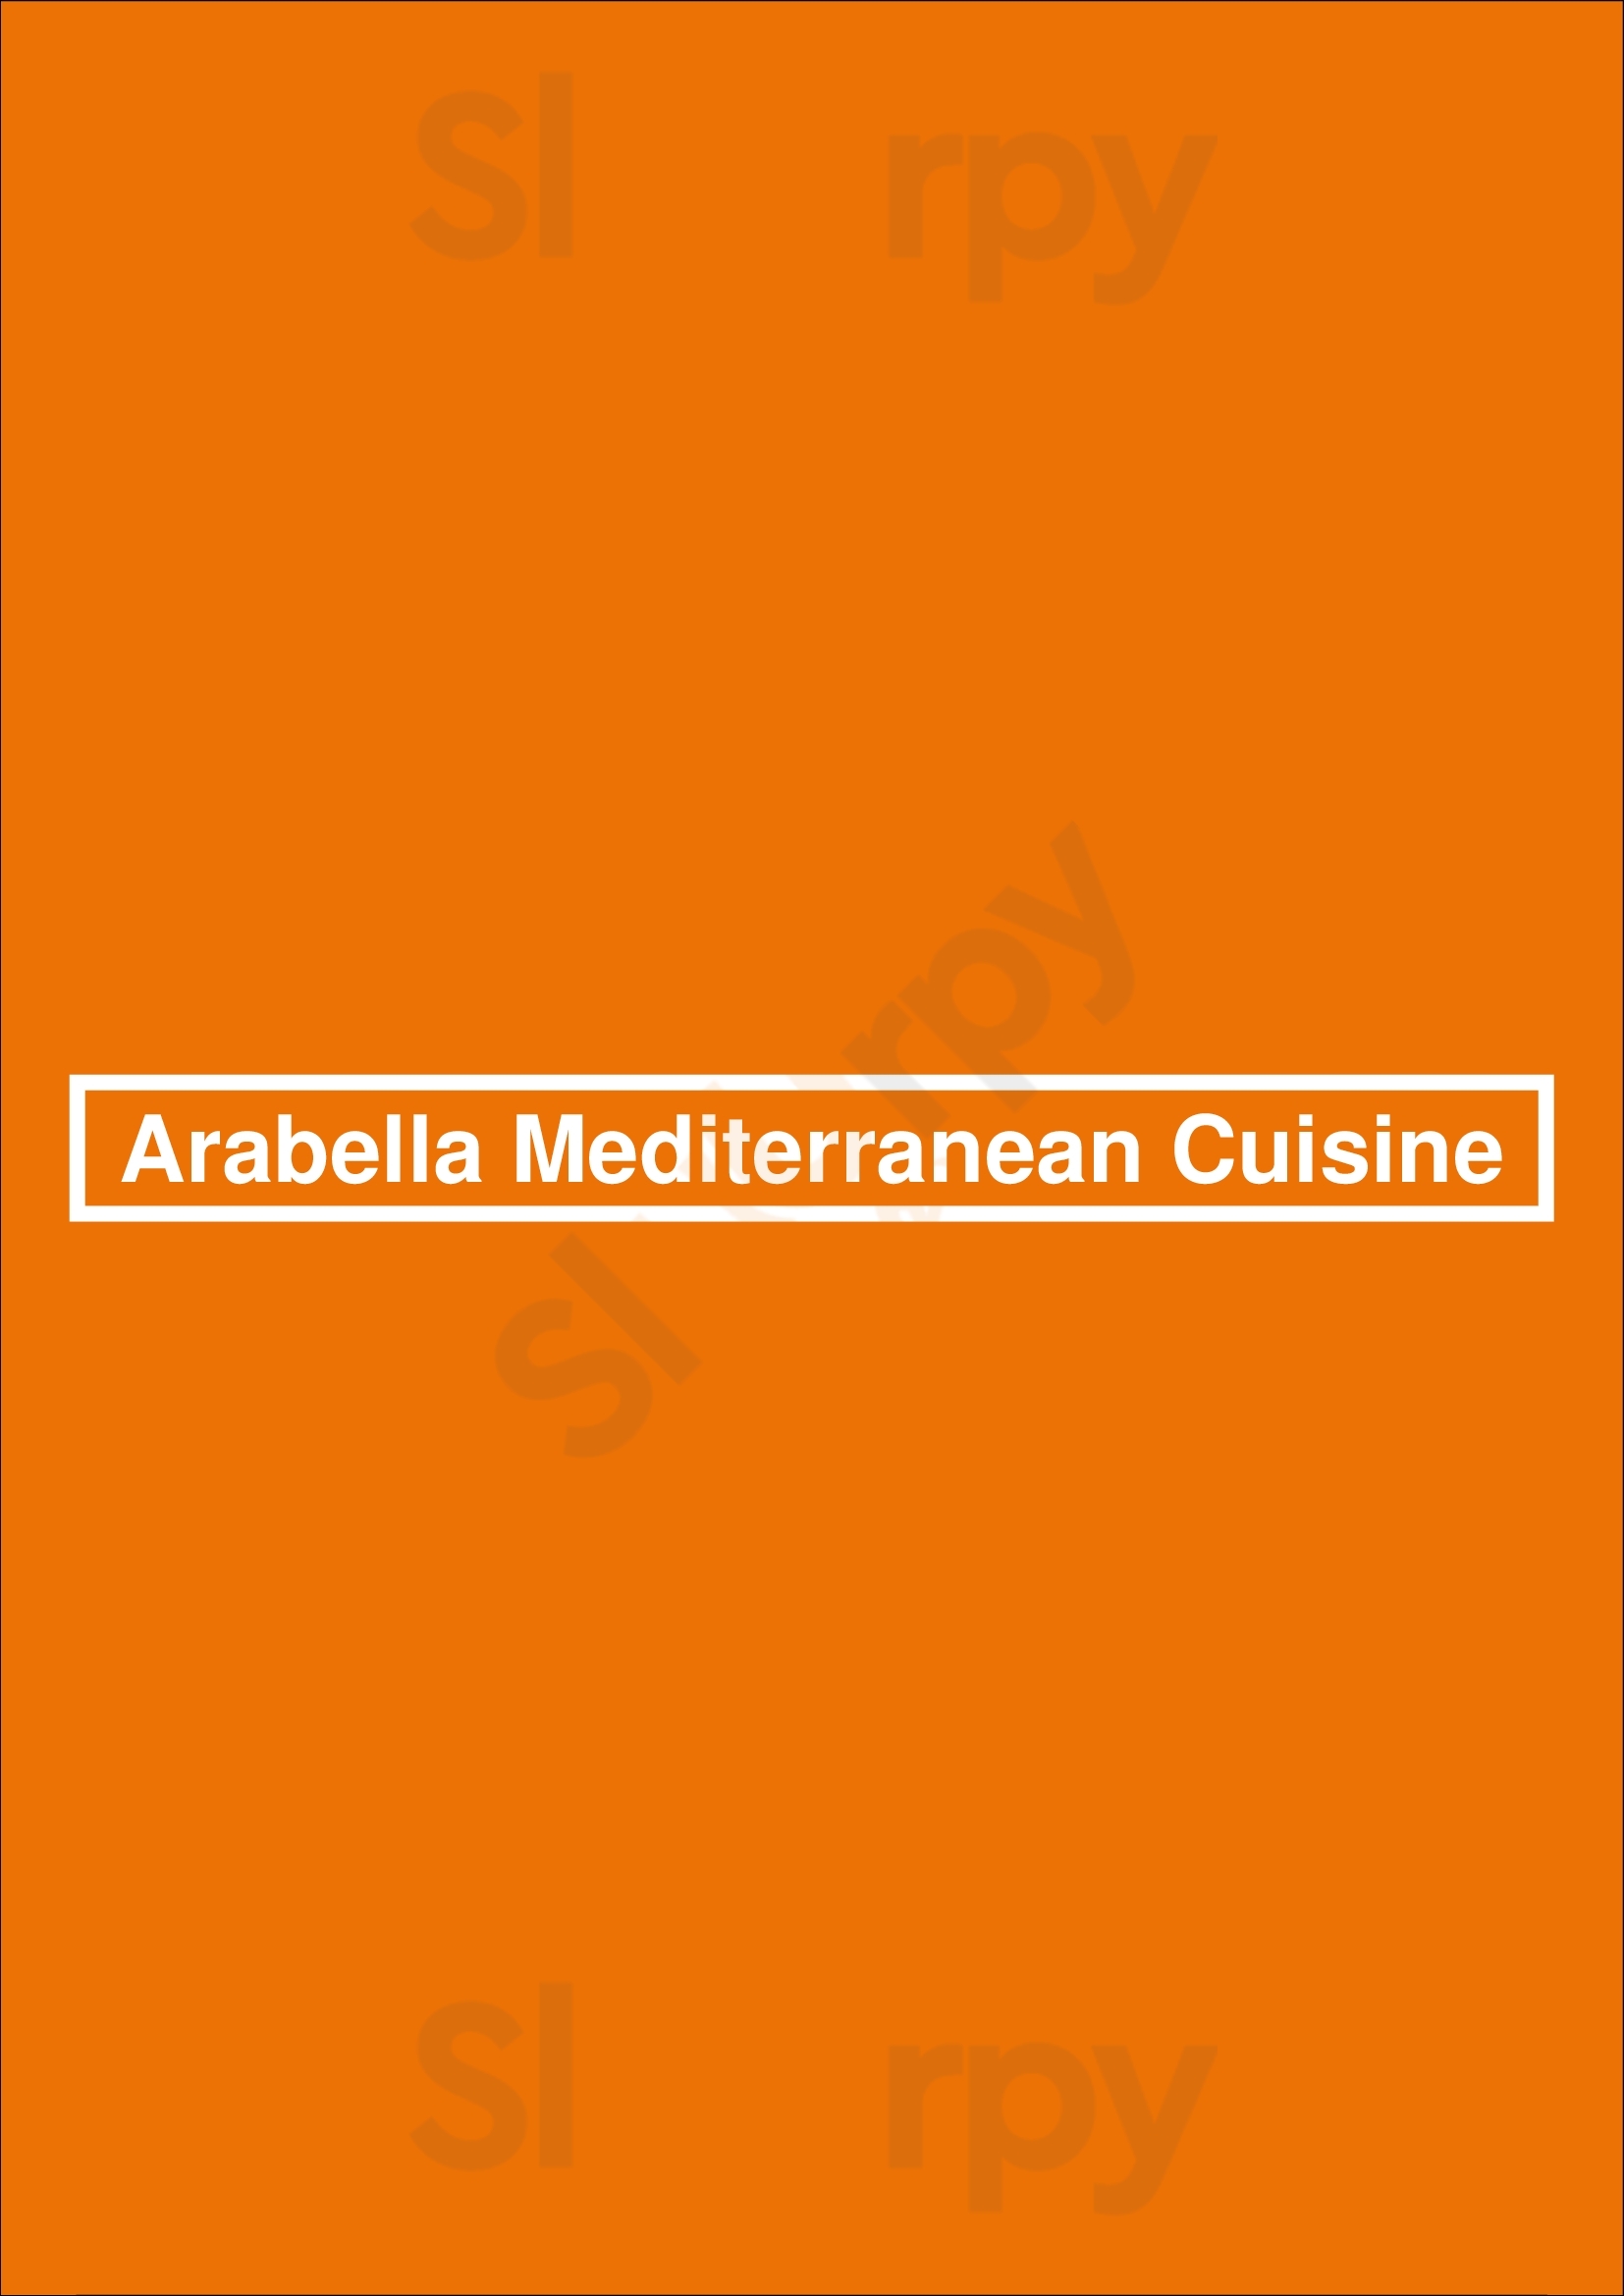 Arabella Mediterranean Cuisine Houston Menu - 1